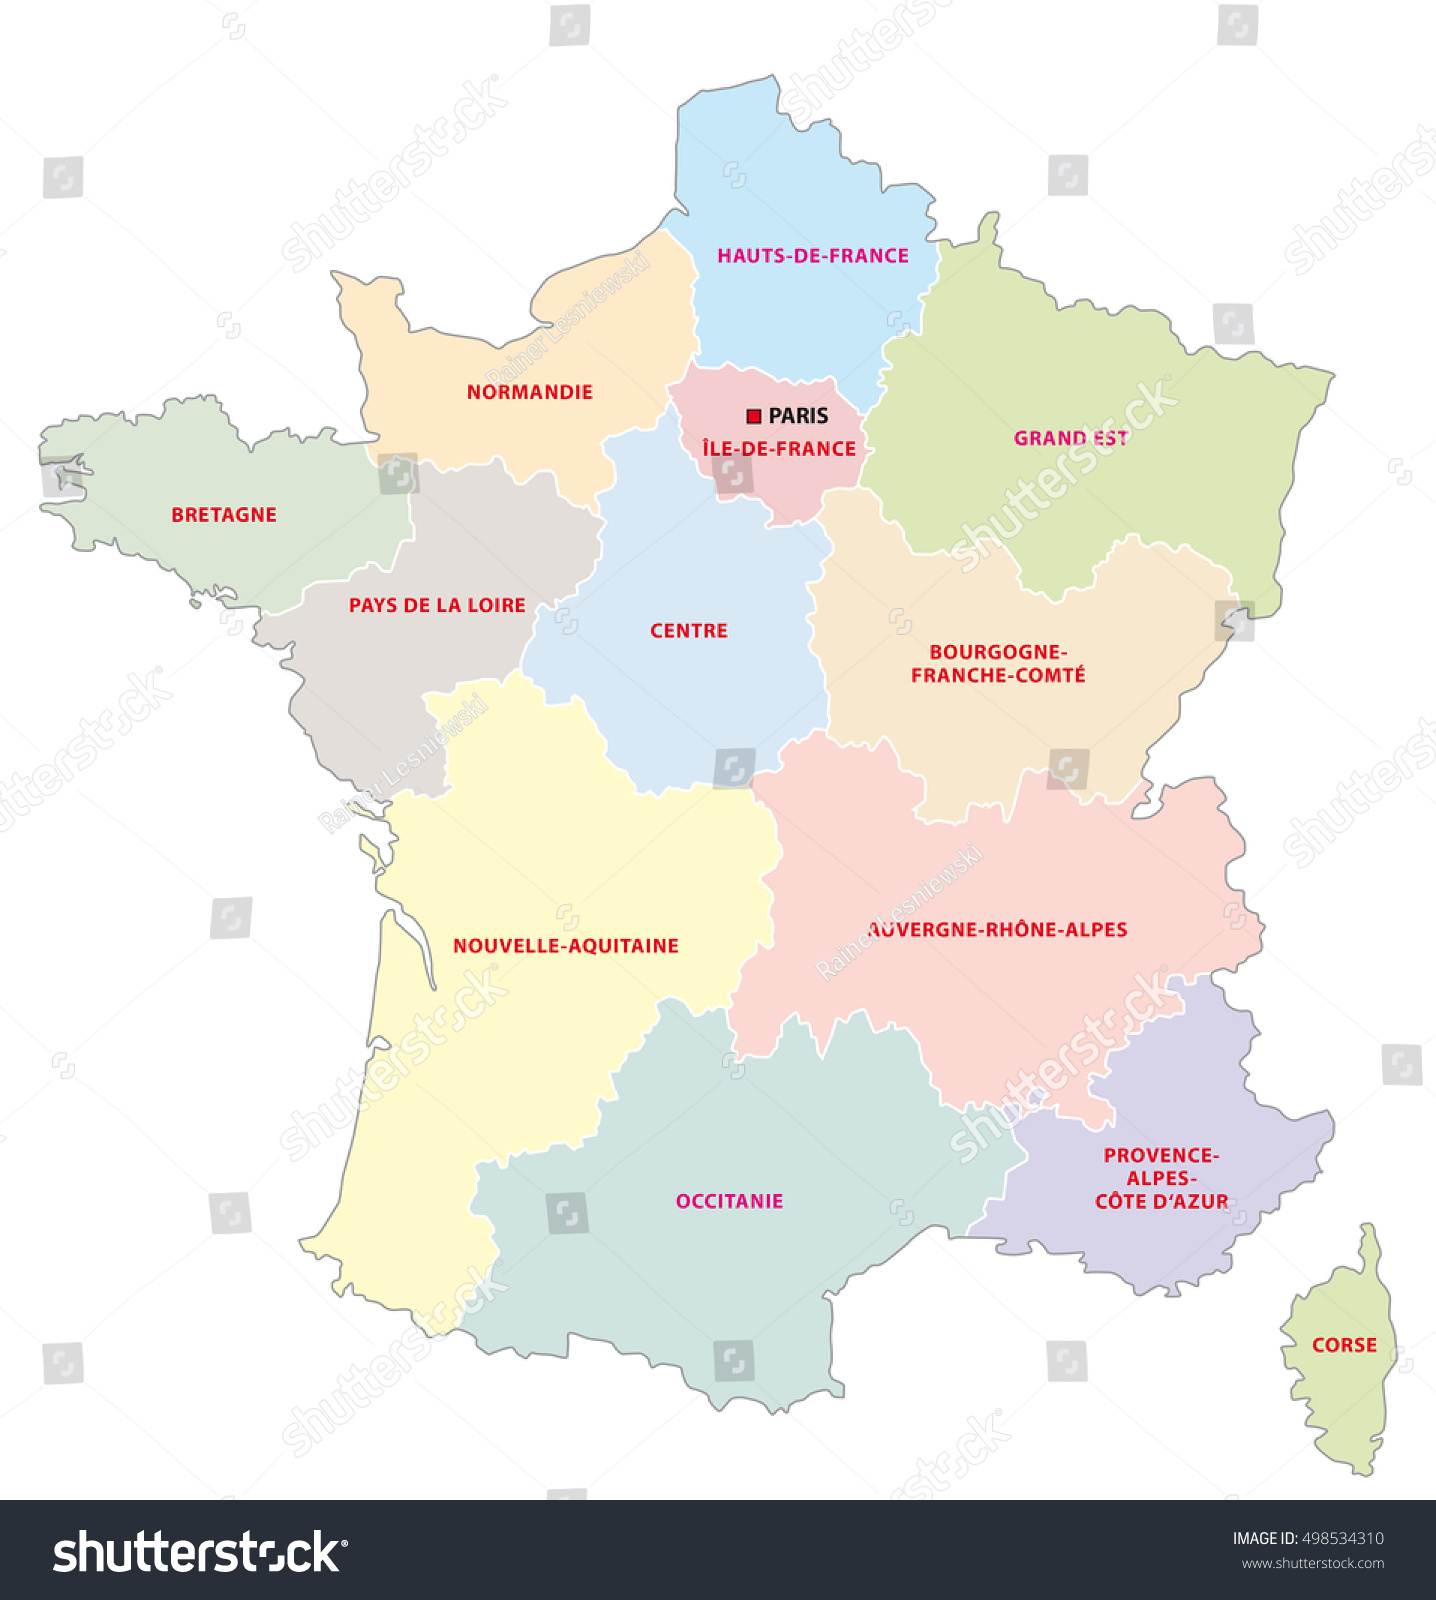 Image Vectorielle De Stock De Carte Administrative Des 13 concernant Carte Des 13 Régions